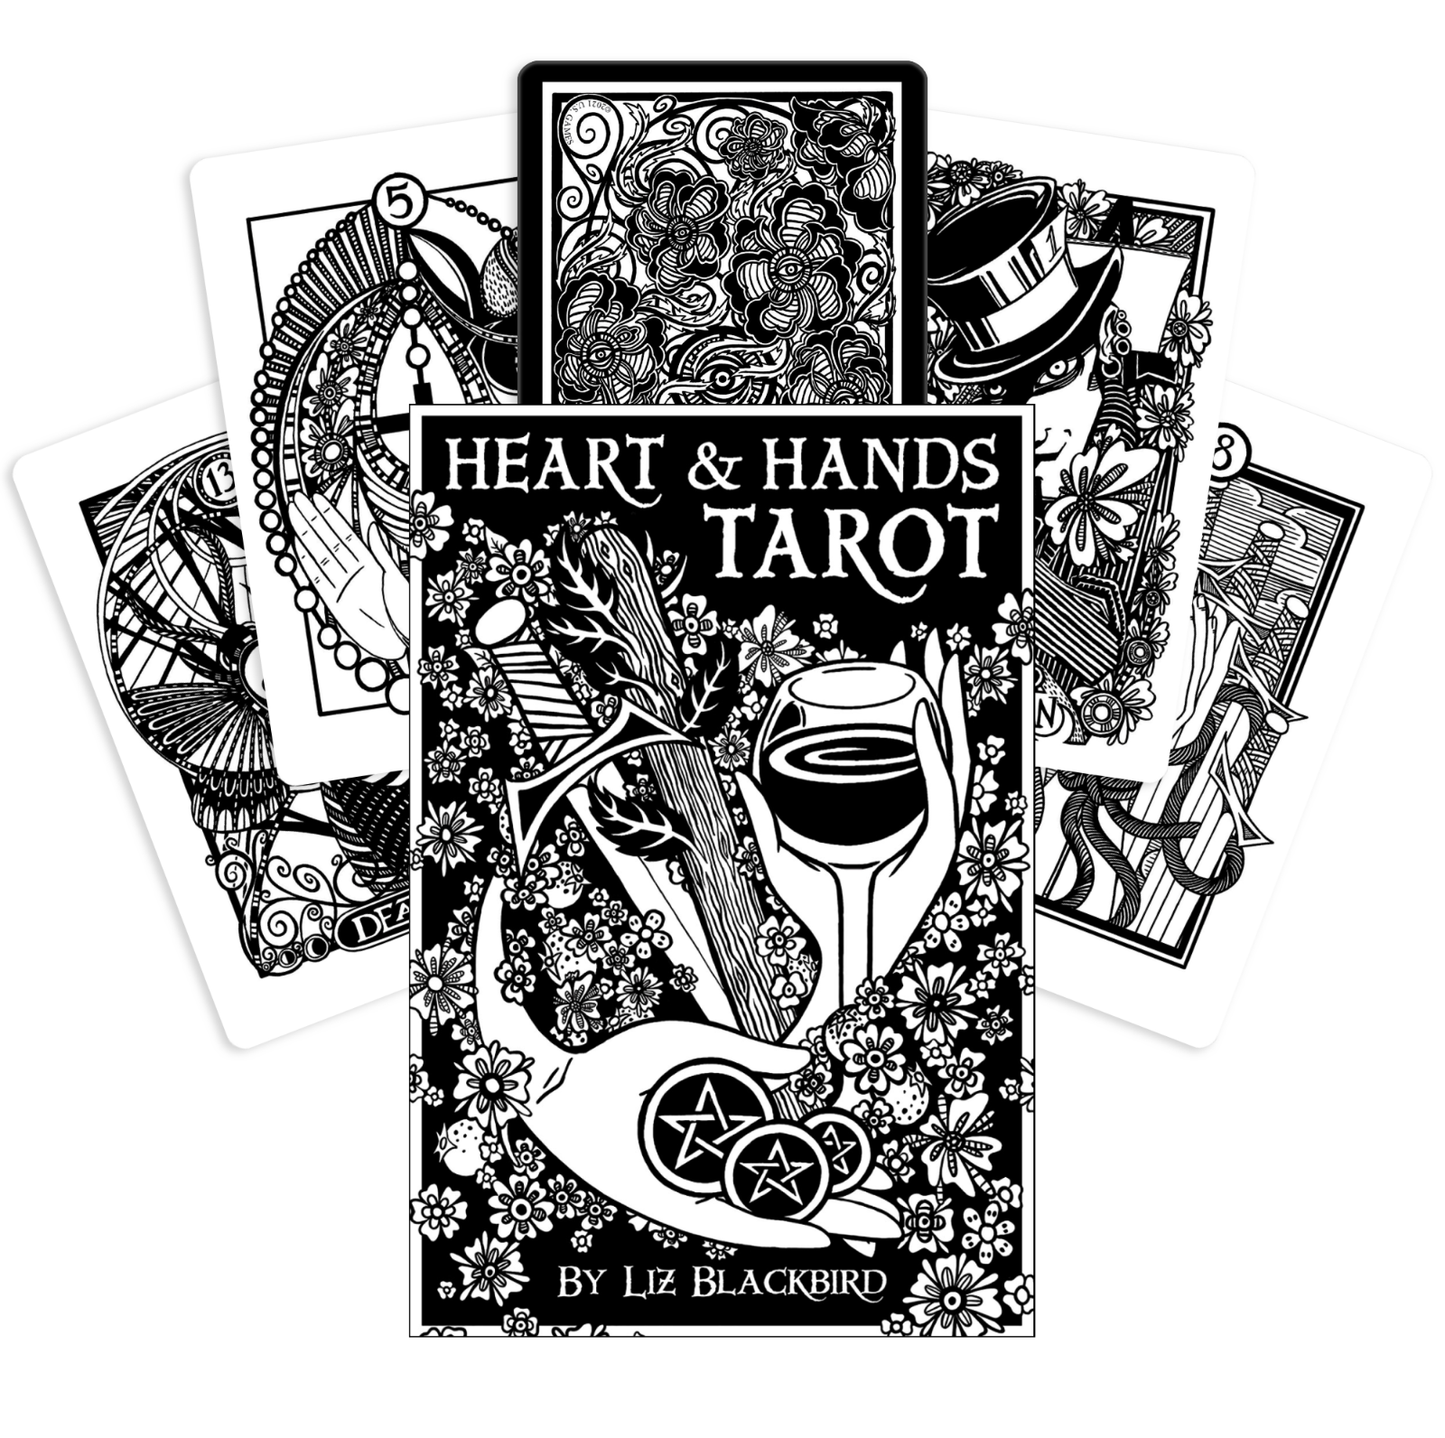 Heart & Hands tarot by Liz Blackbird